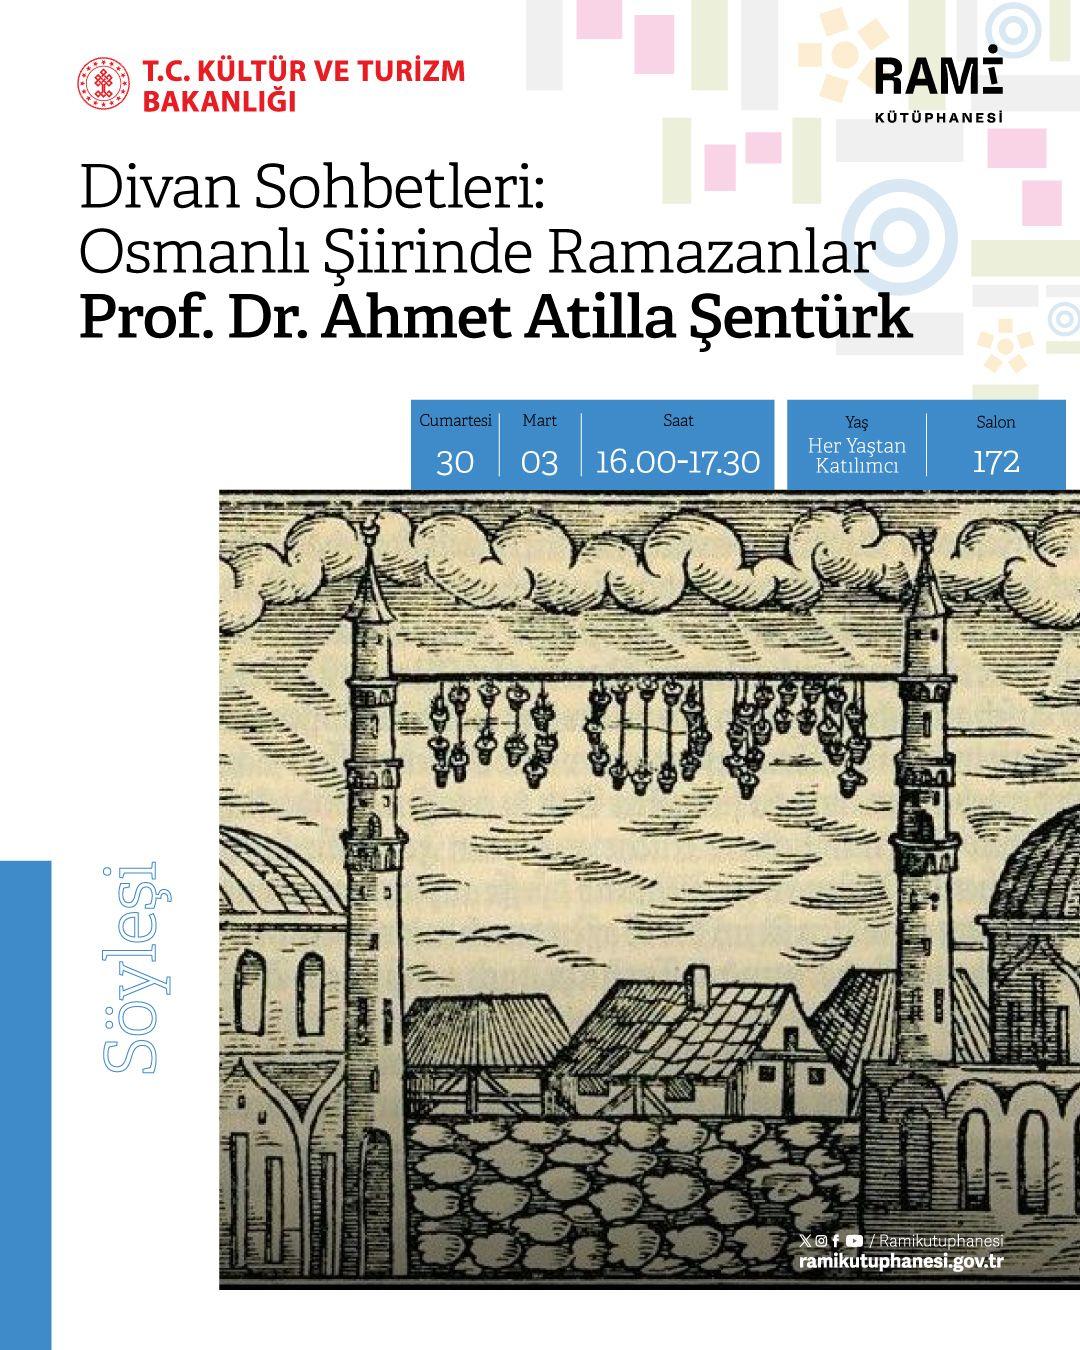 Divan Sohbetleri: Osmanlı Şiirinde Ramazanlar (Prof. Dr. Ahmet Atilla Şentürk)